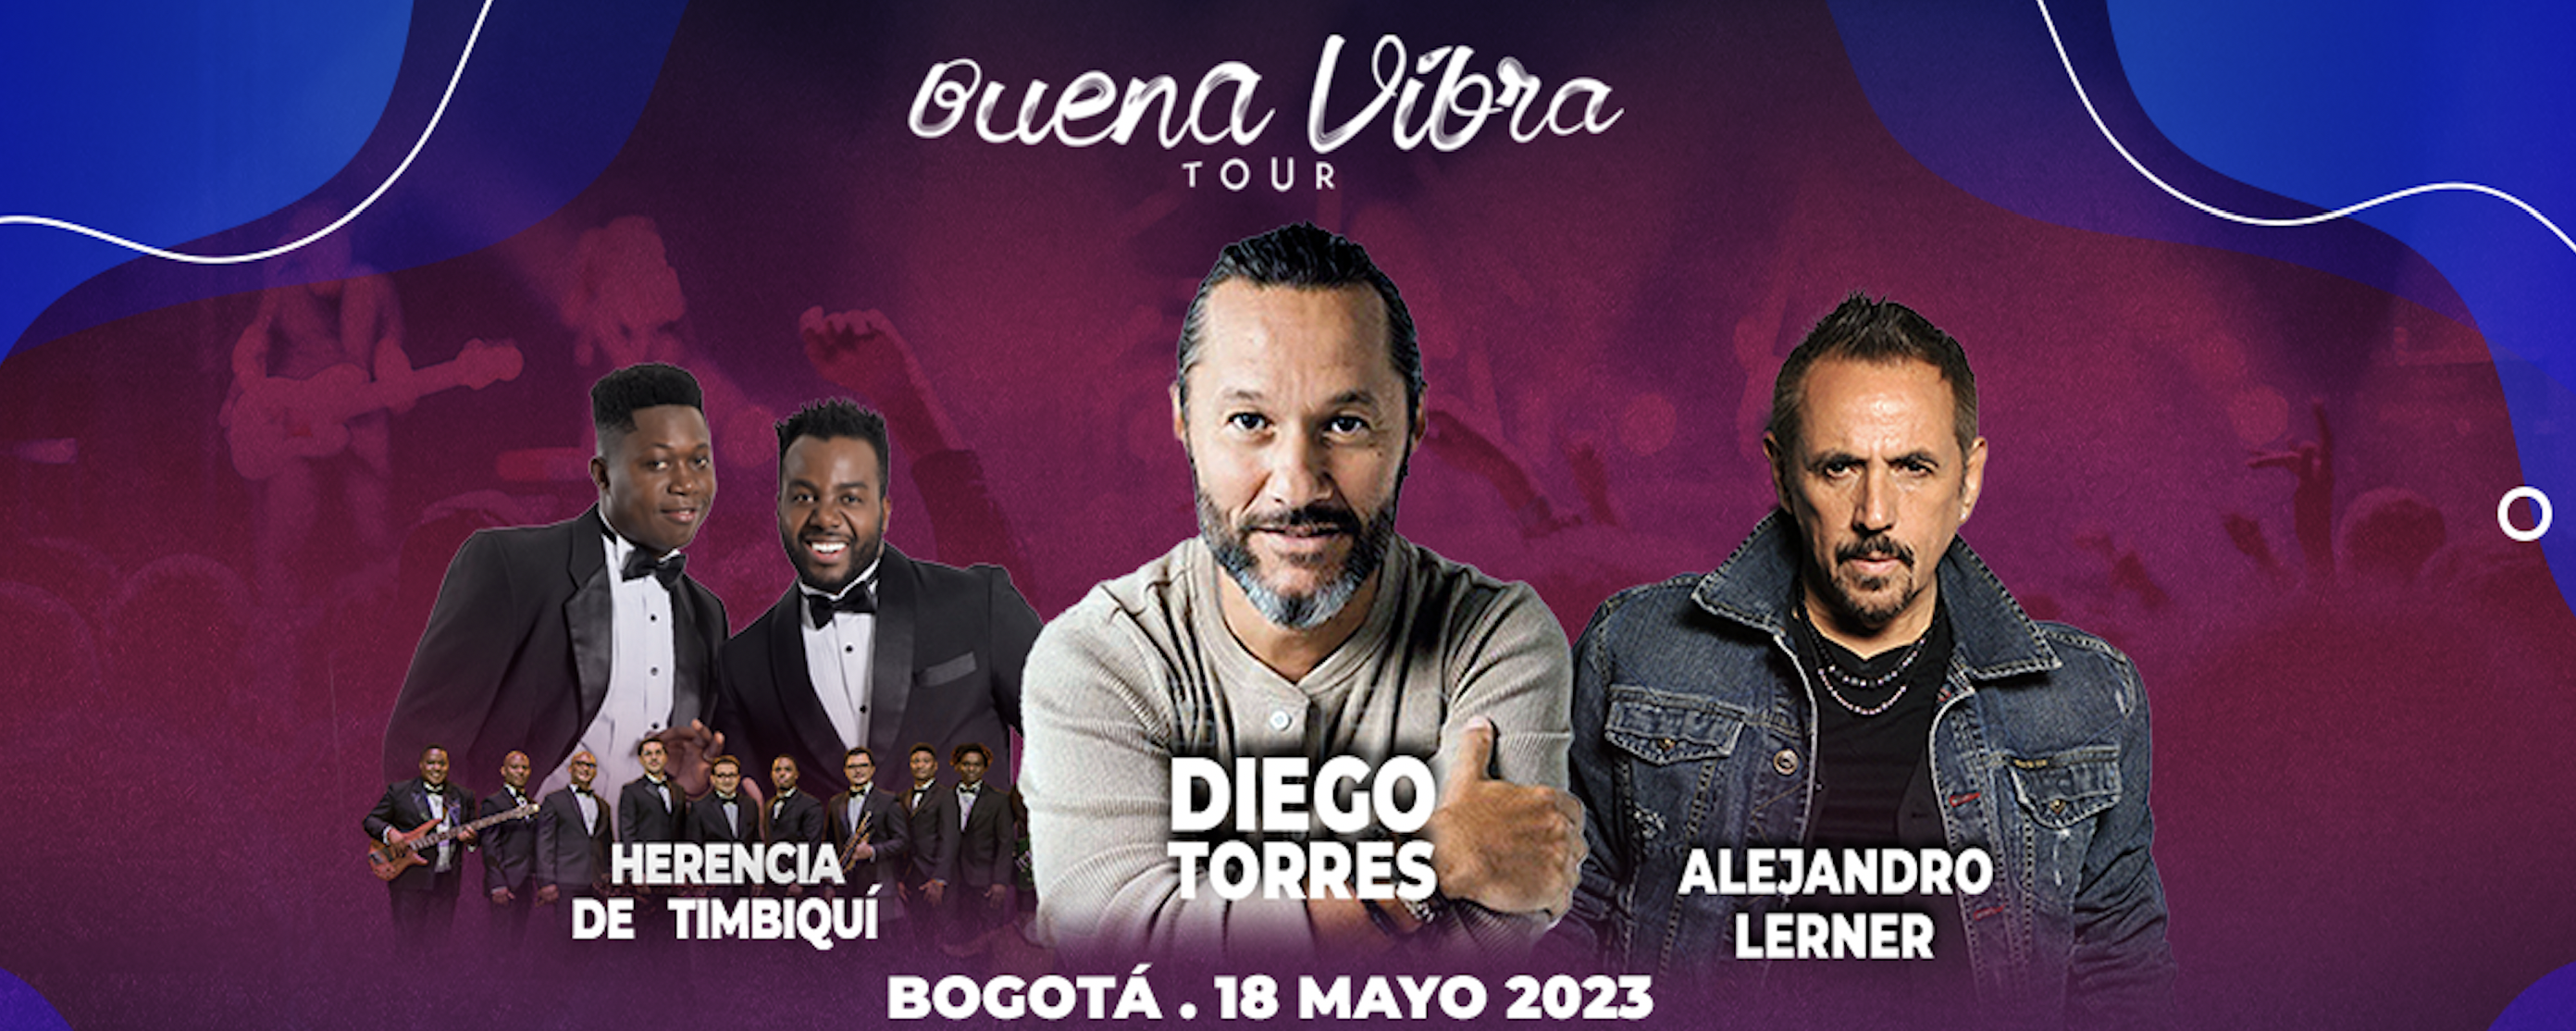 “Buena Vibra Tour” anuncia la nueva fecha en Bogotá